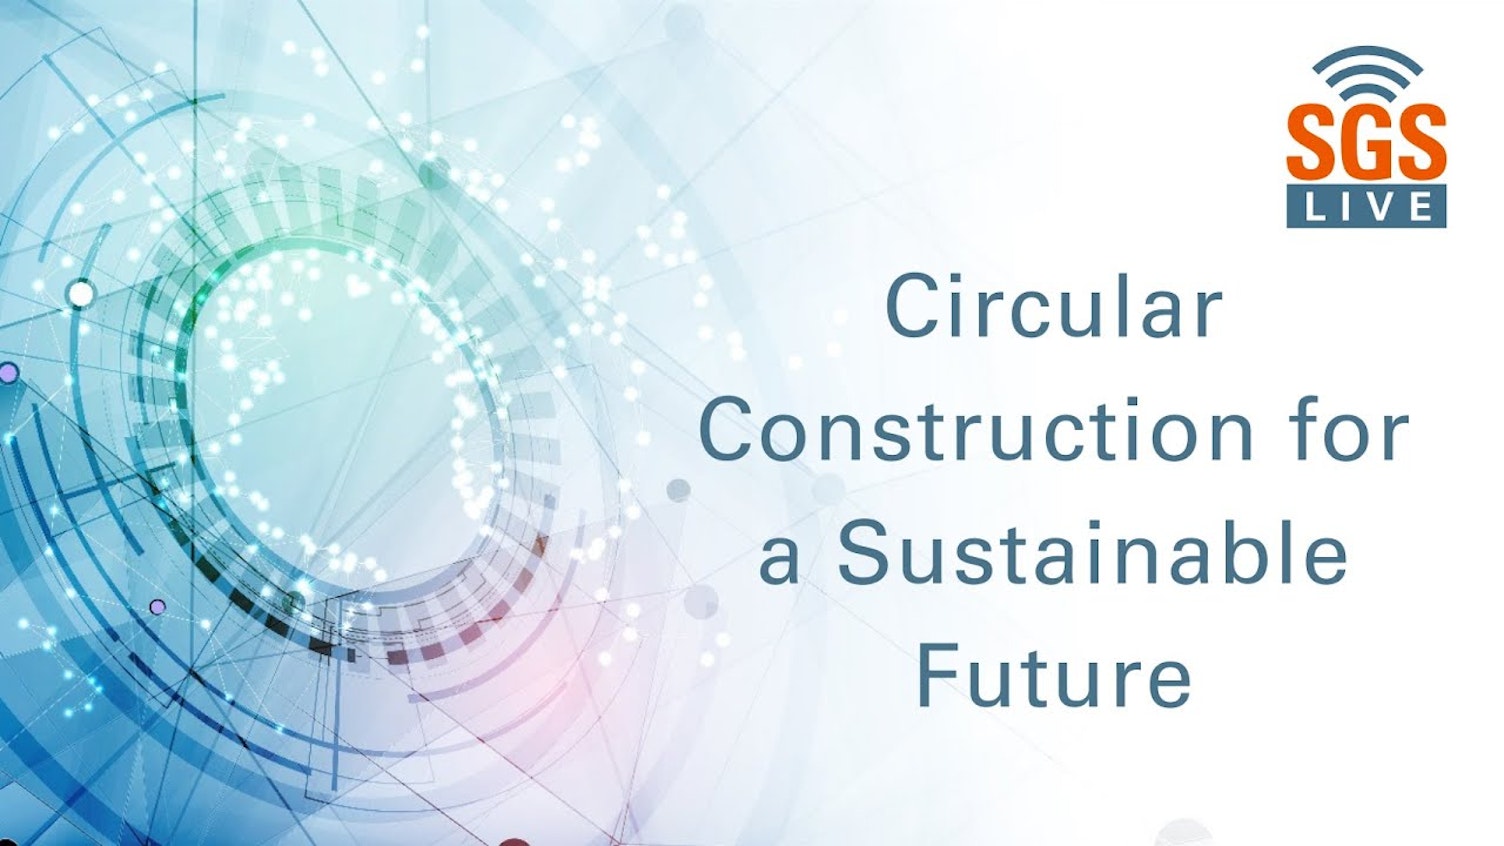 Construção circular para um futuro sustentável